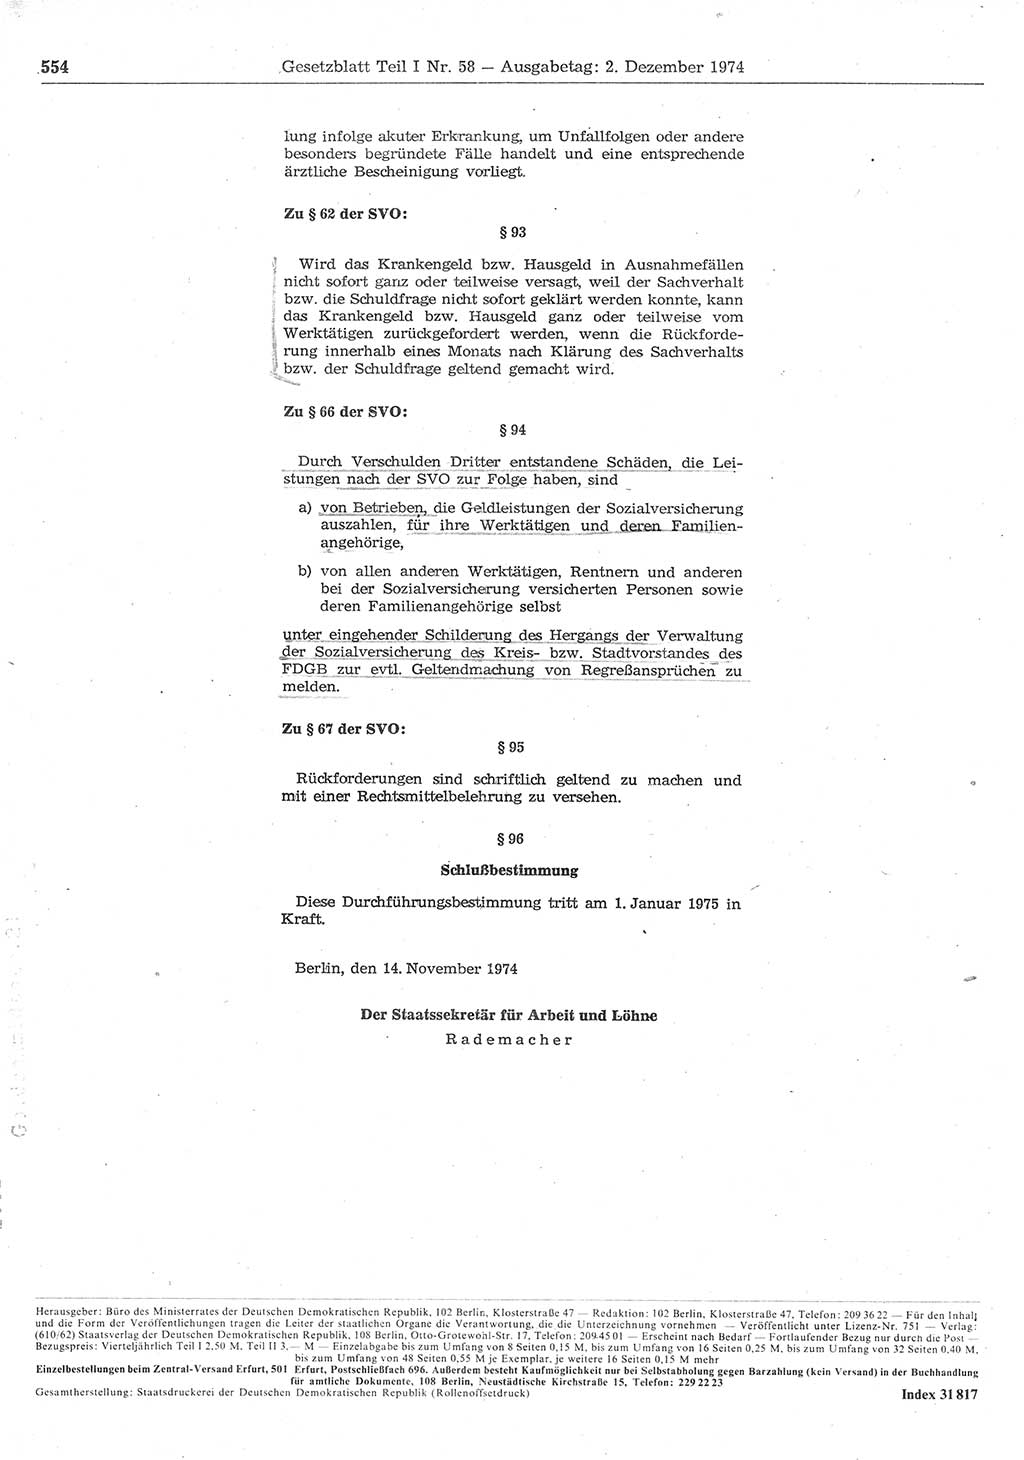 Gesetzblatt (GBl.) der Deutschen Demokratischen Republik (DDR) Teil Ⅰ 1974, Seite 554 (GBl. DDR Ⅰ 1974, S. 554)